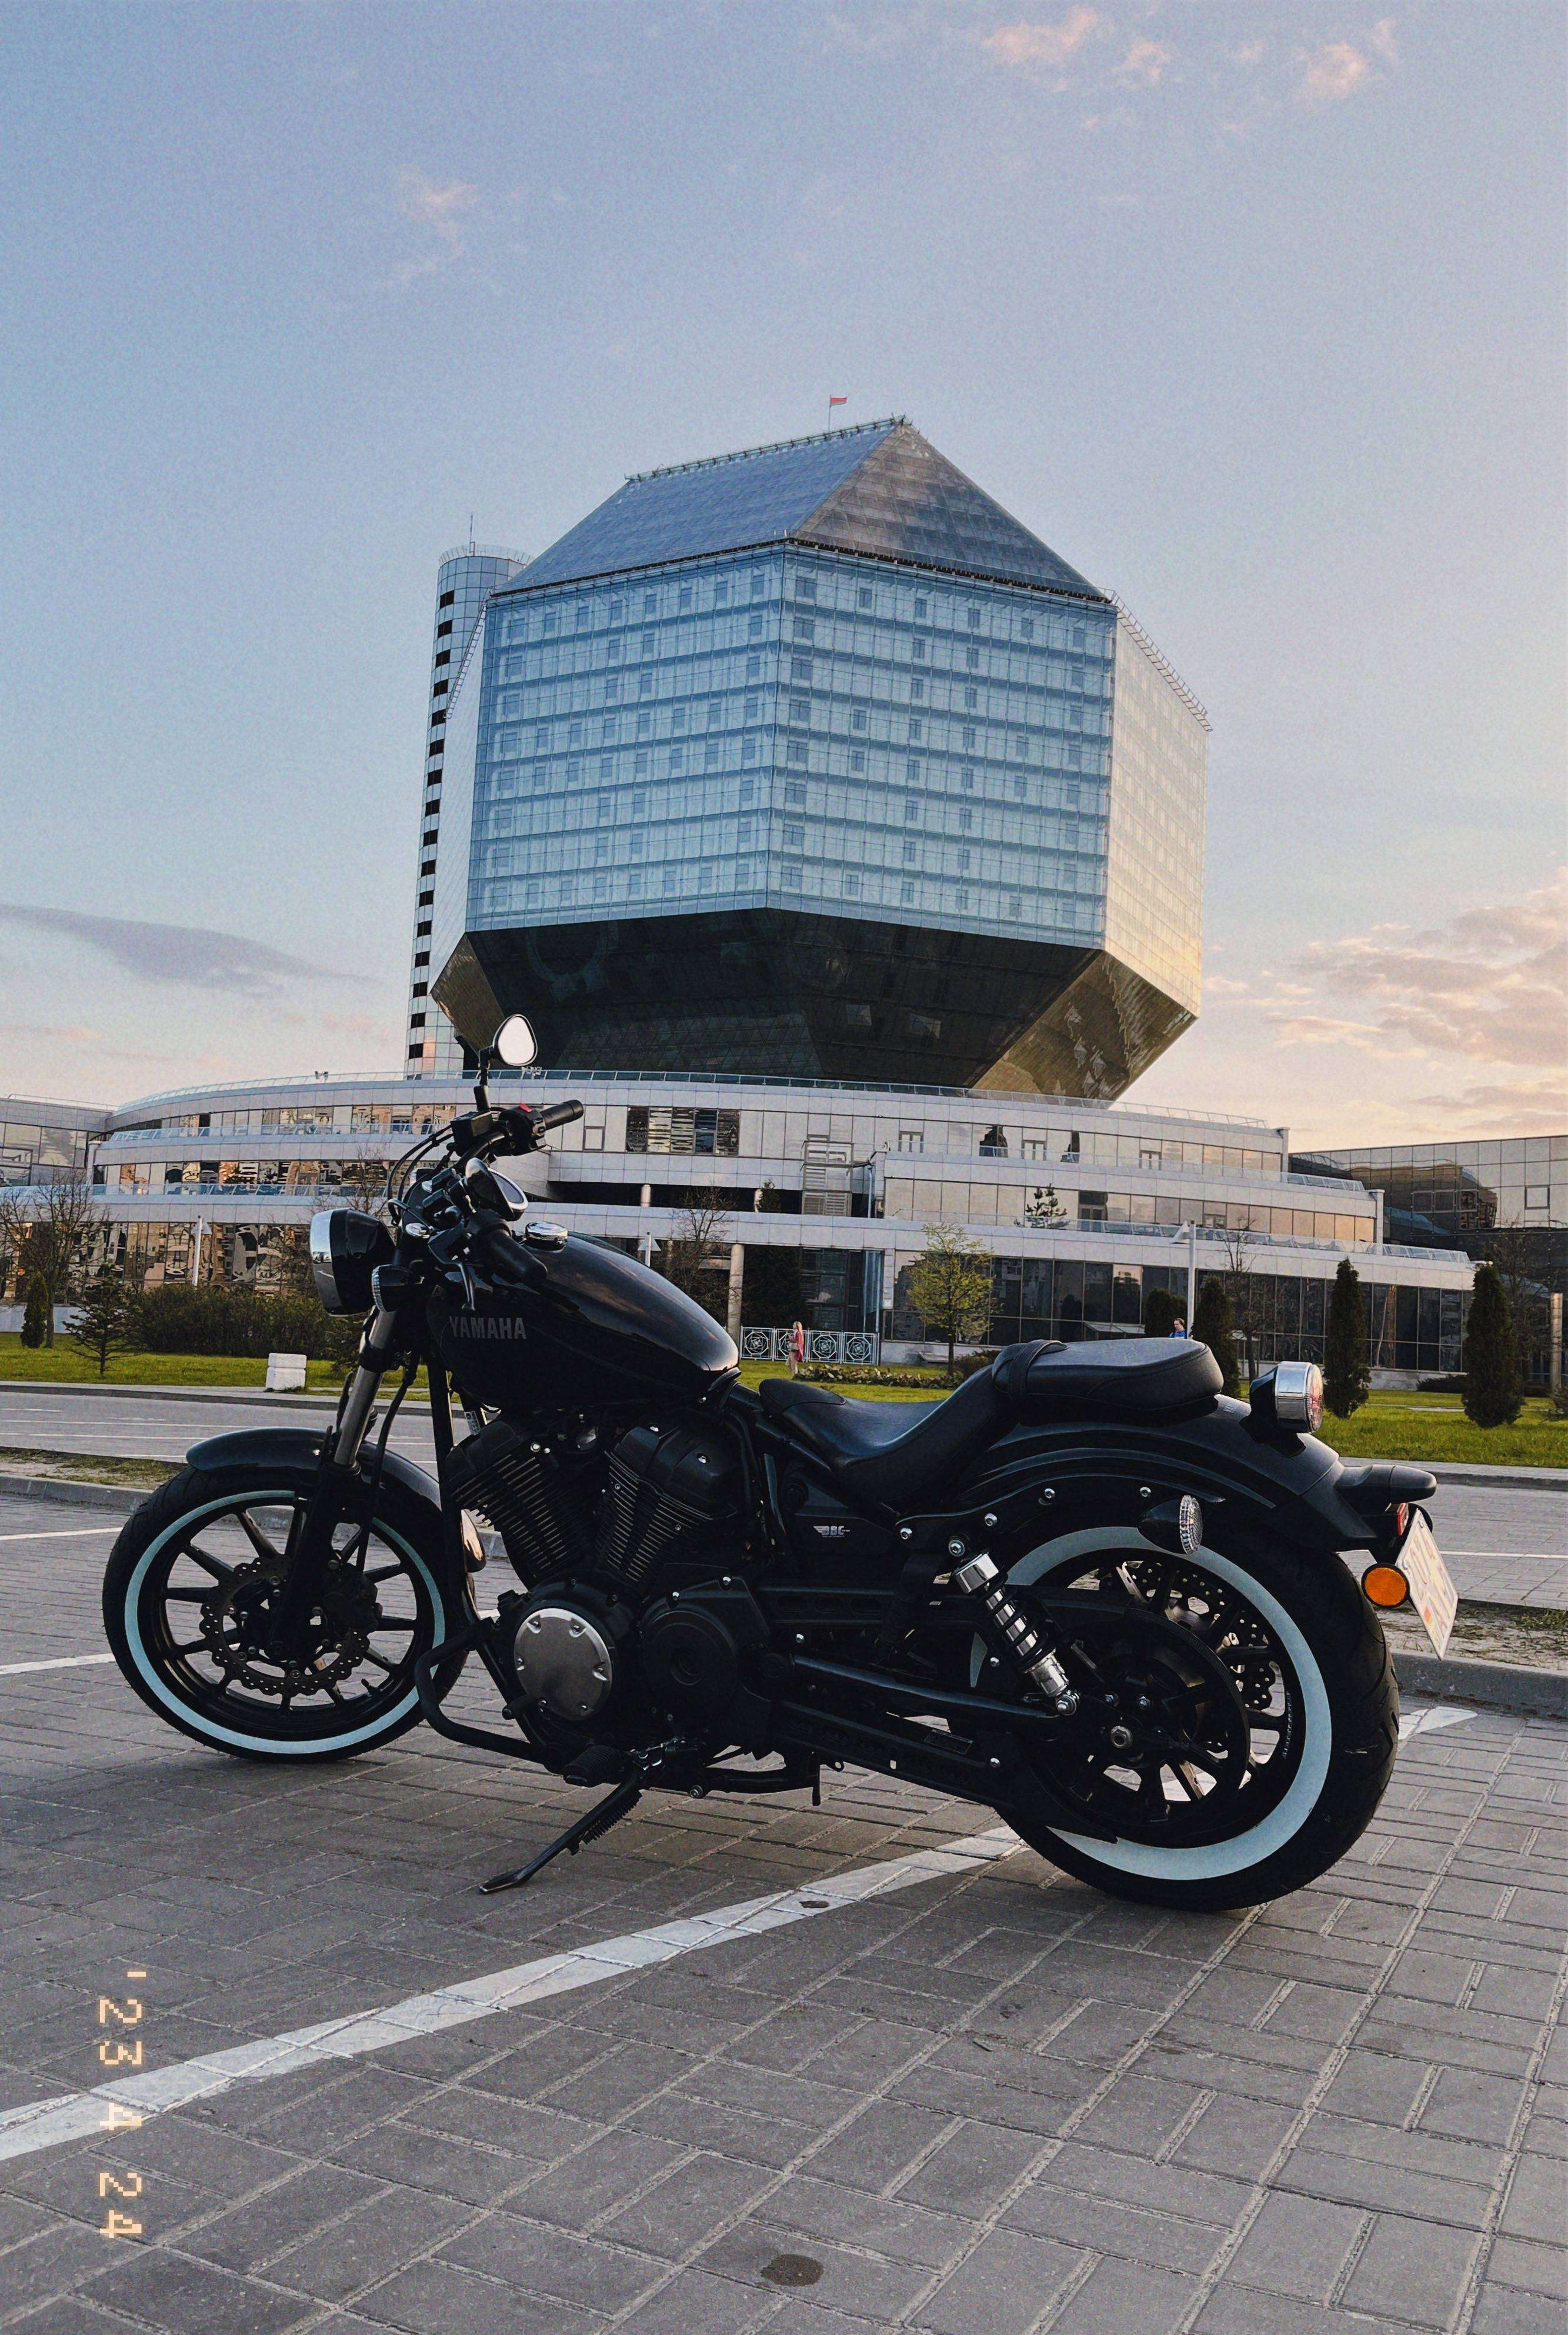 Купить мотоцикл Yamaha в Беларуси в кредит - цены, характеристики, фото. 